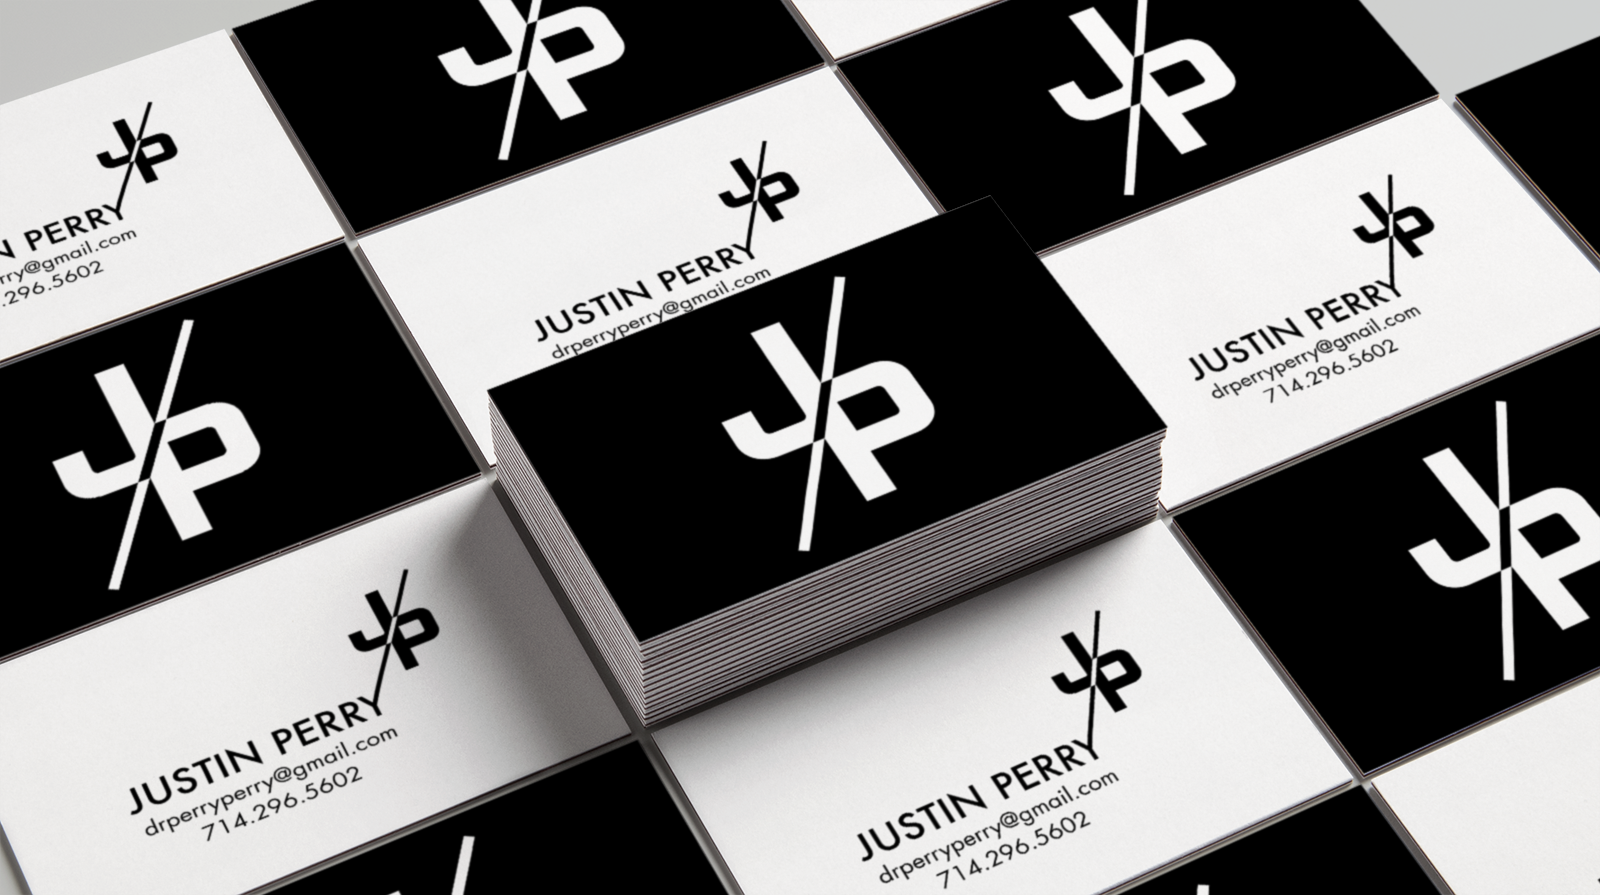 JP Business Card + Logo